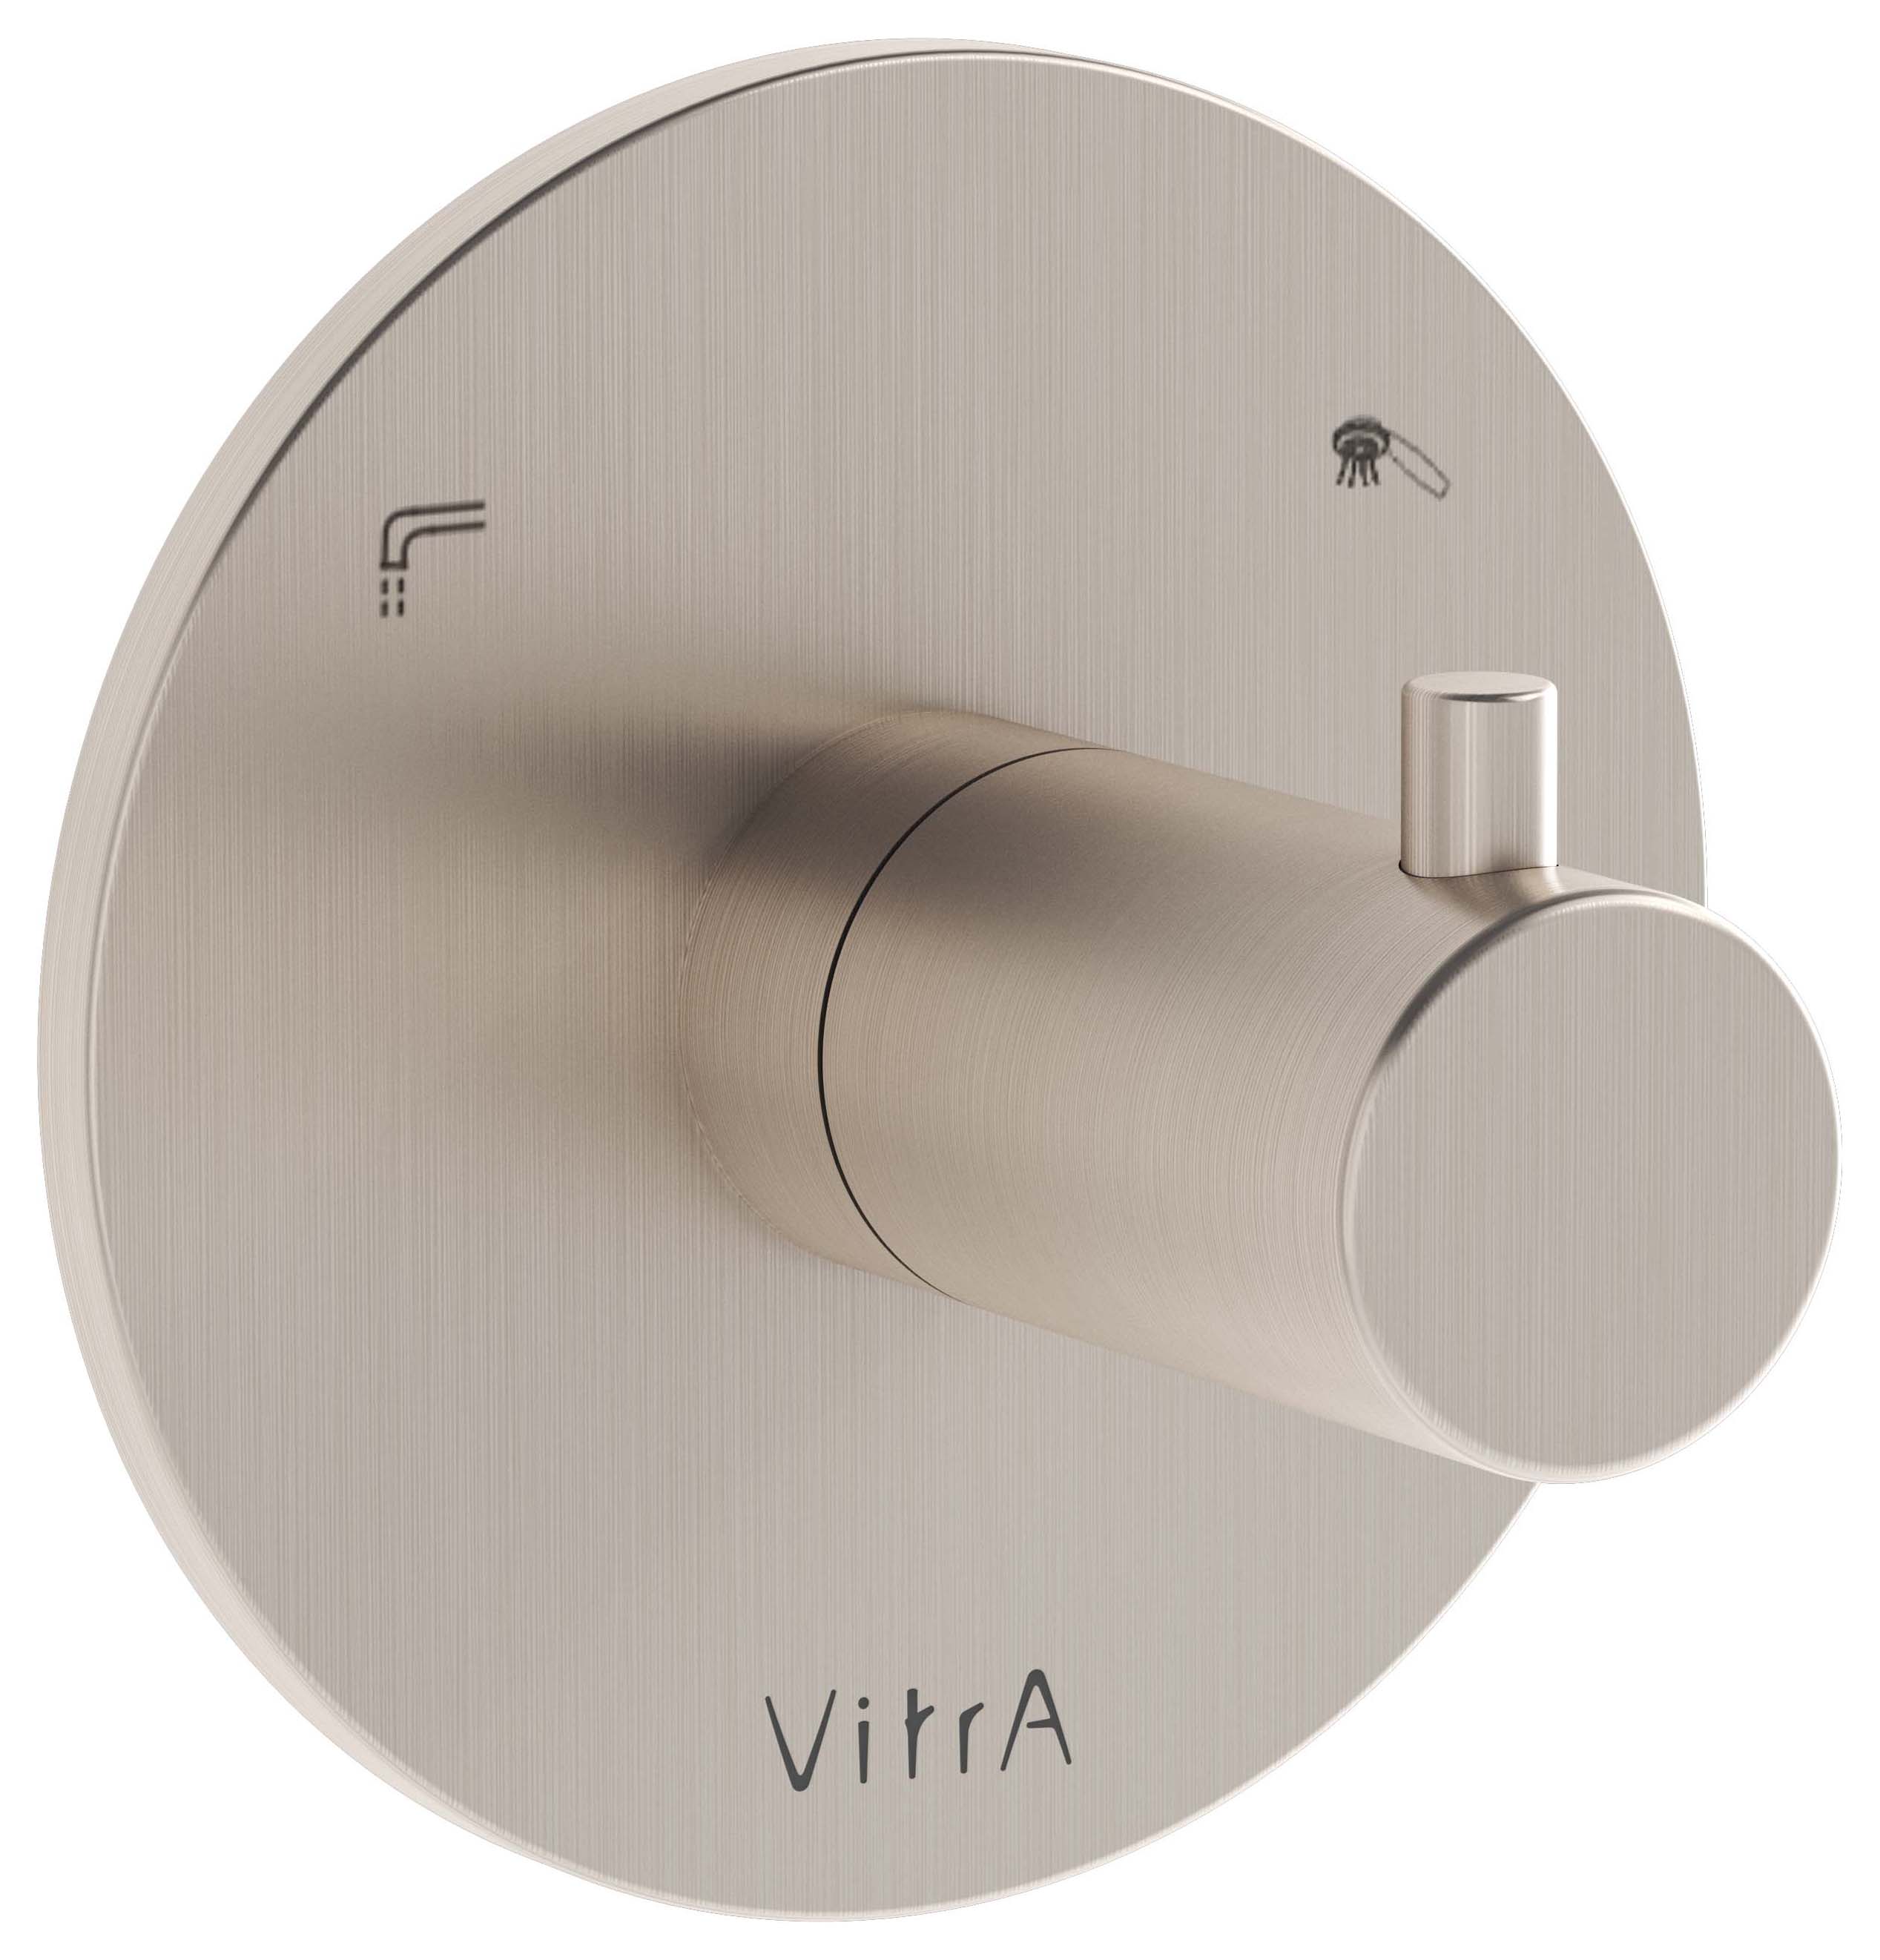 Image of VitrA Origin Round Built-In 2 Way Concealed Shower Diverter Valve - Brushed Nickel